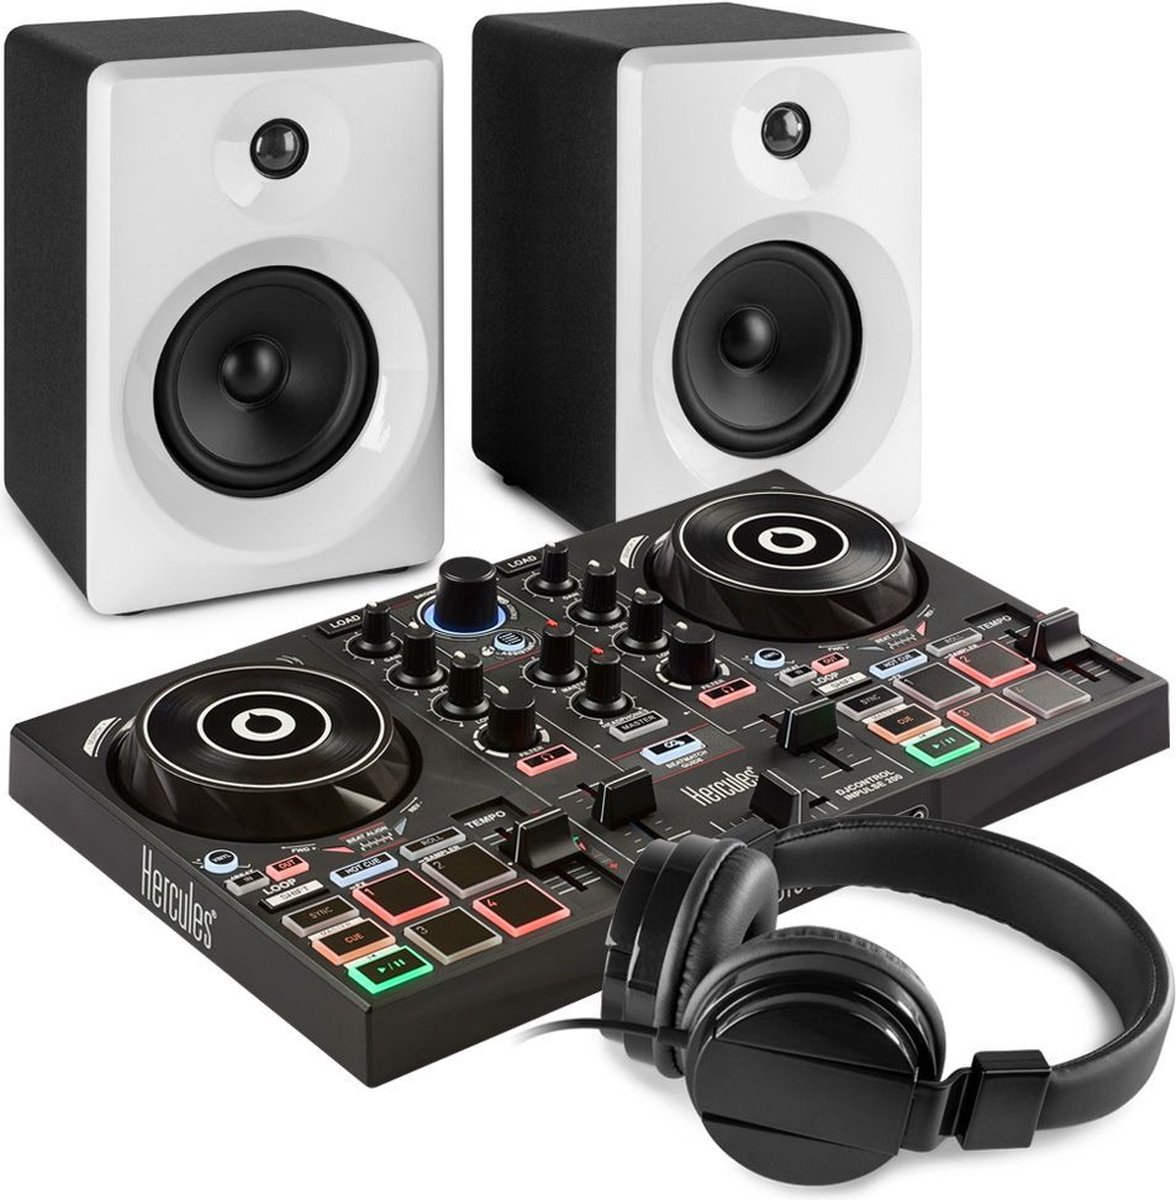 DJ Set - Hercules DJ Set kinderen - Complete DJ starter kit voor de serieuze instapper! - DJ controller, speakers en koptelefoon - Zwart/wit - Hercules